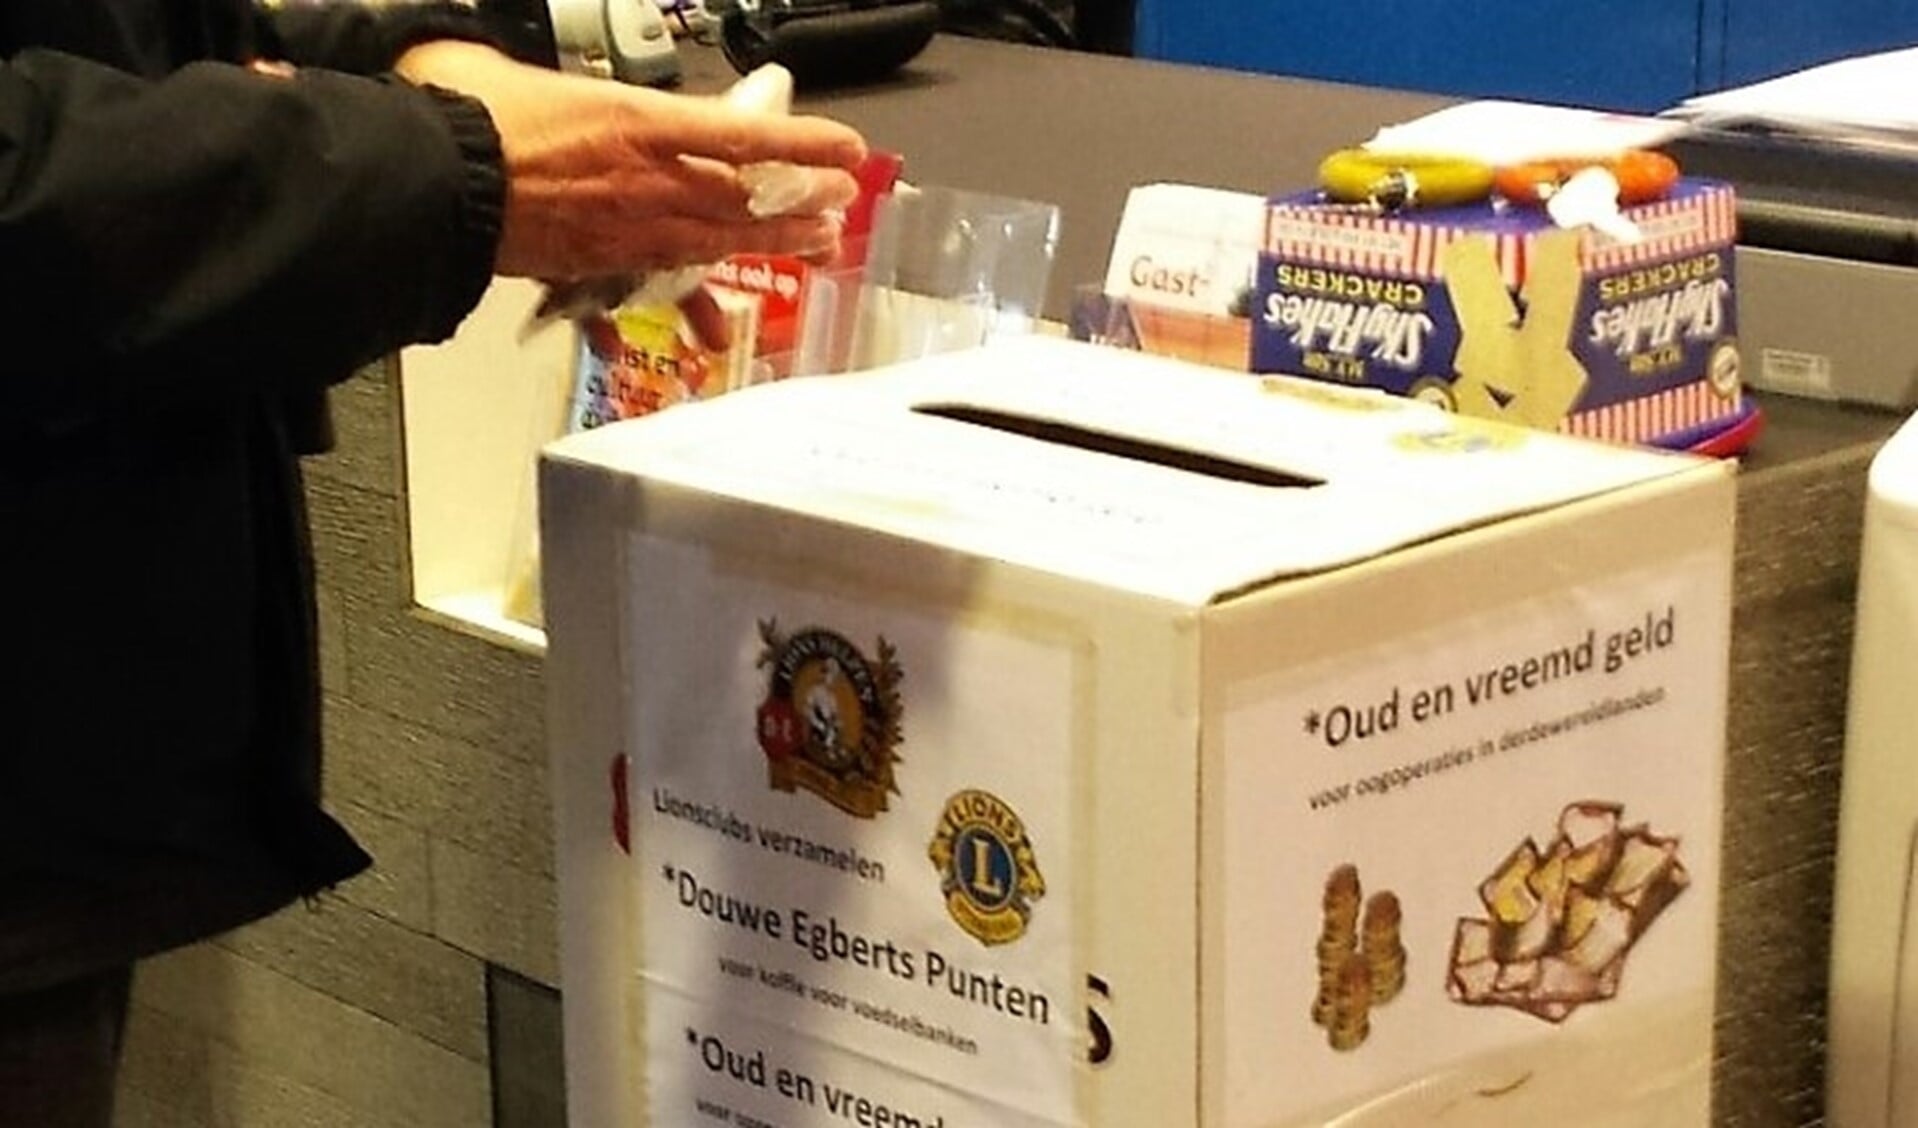 Op diverse inleveradressen in Leidschendam-Voorburg en Leidschenveen staan speciale inzamelboxen waar men koffiepunten en oud en vreemd  geld kan inleveren (foto: pr).